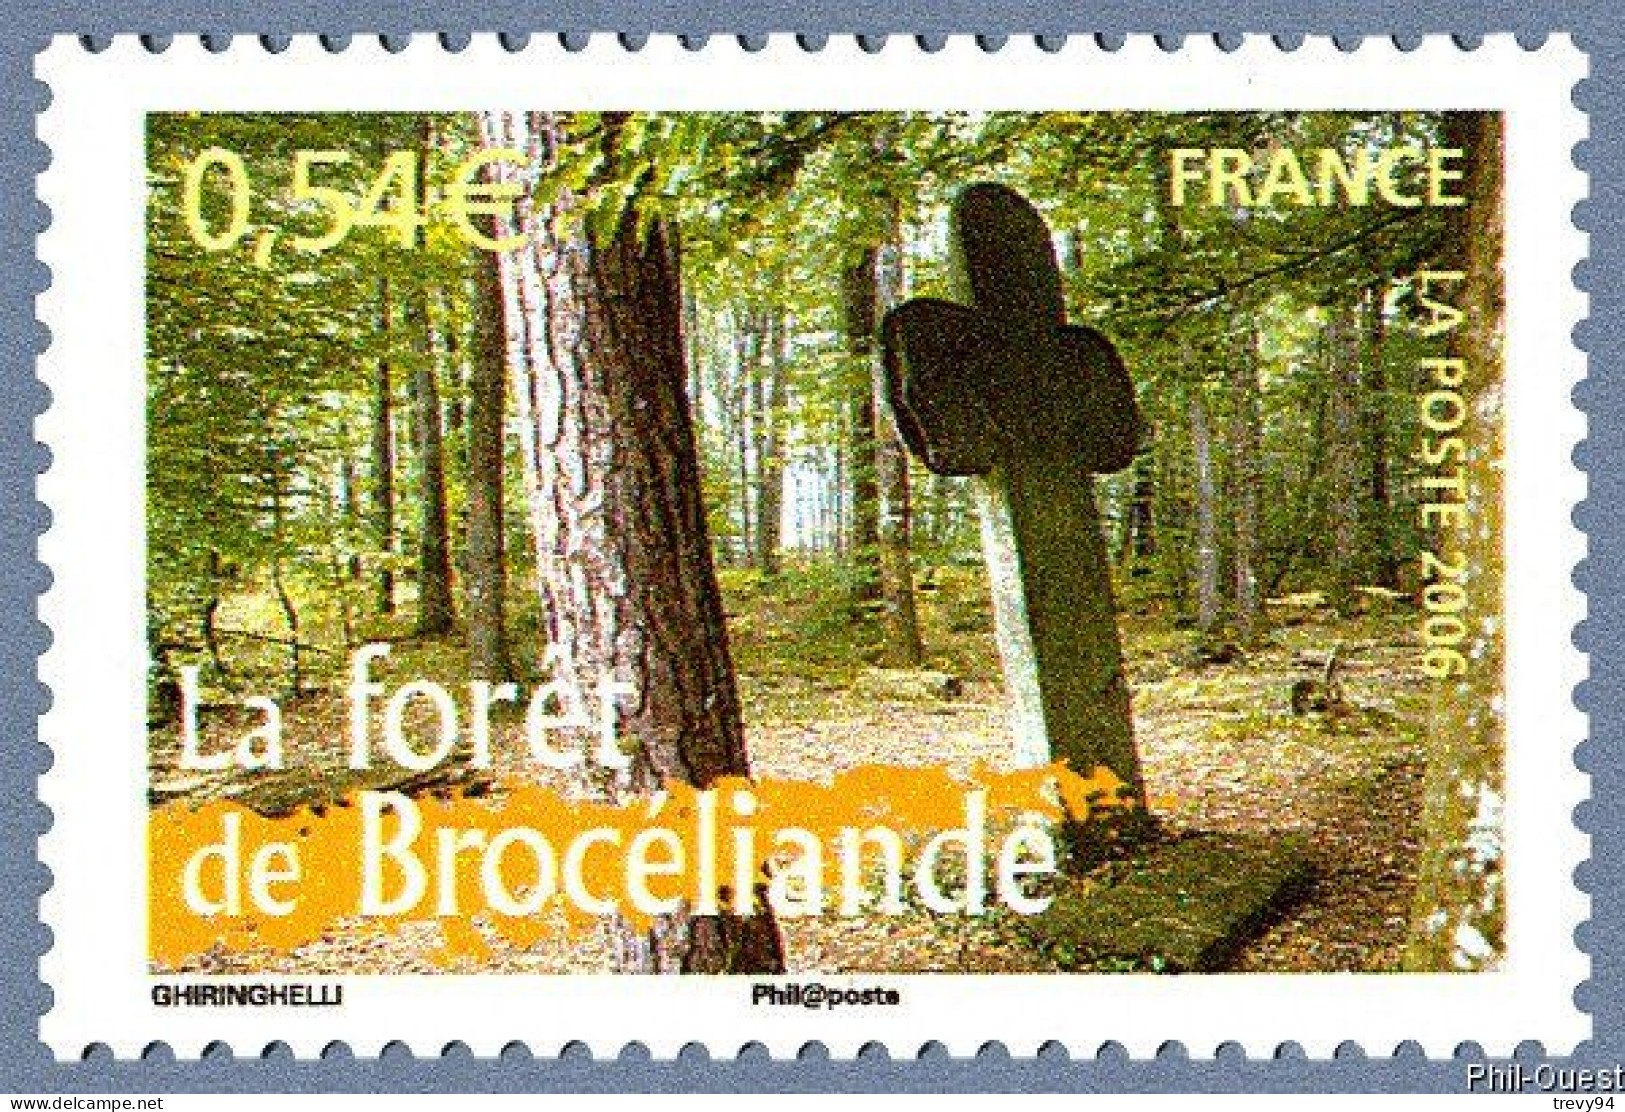 Timbre De 2006 - Portraits De Régions N°8 - La France à Vivre Forêt De Brocéliande - N° 3944 - Neufs